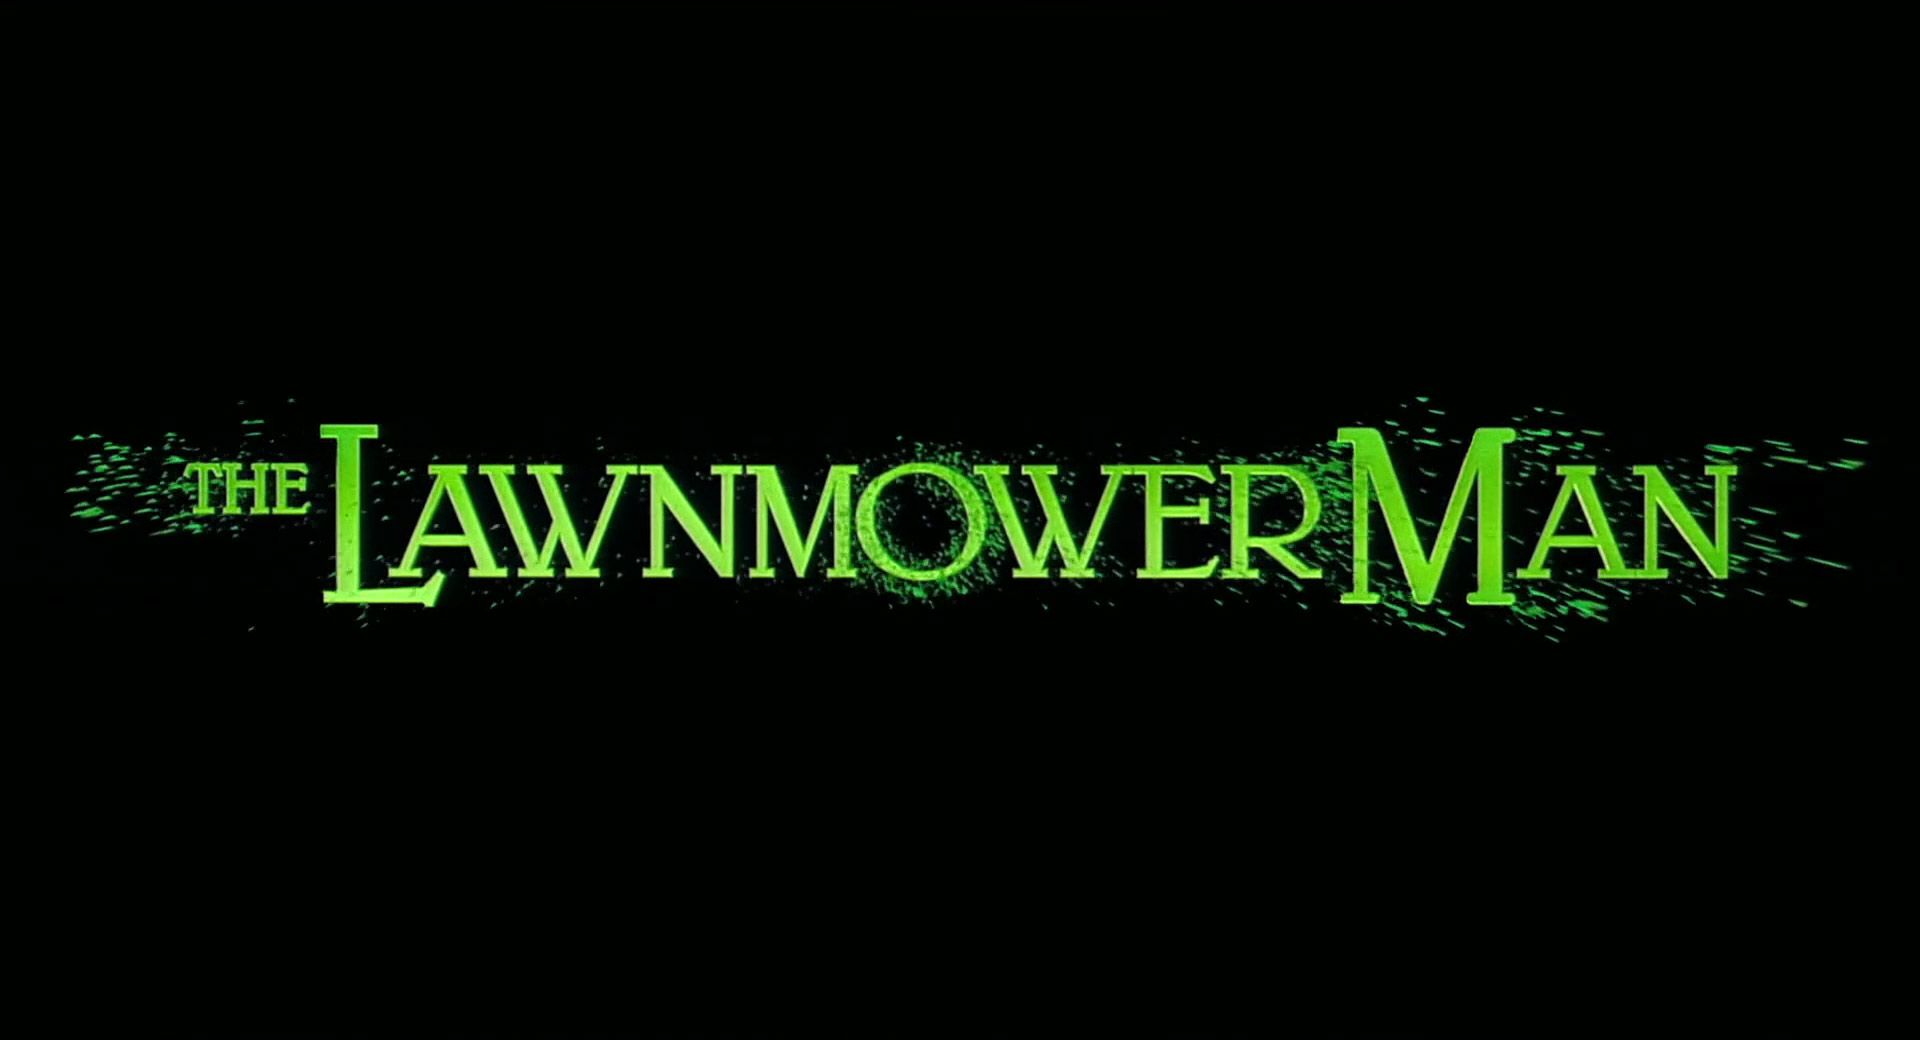 Lawnmower Man | How a Stephen King Short Story Became a Cyberpunk Shocker